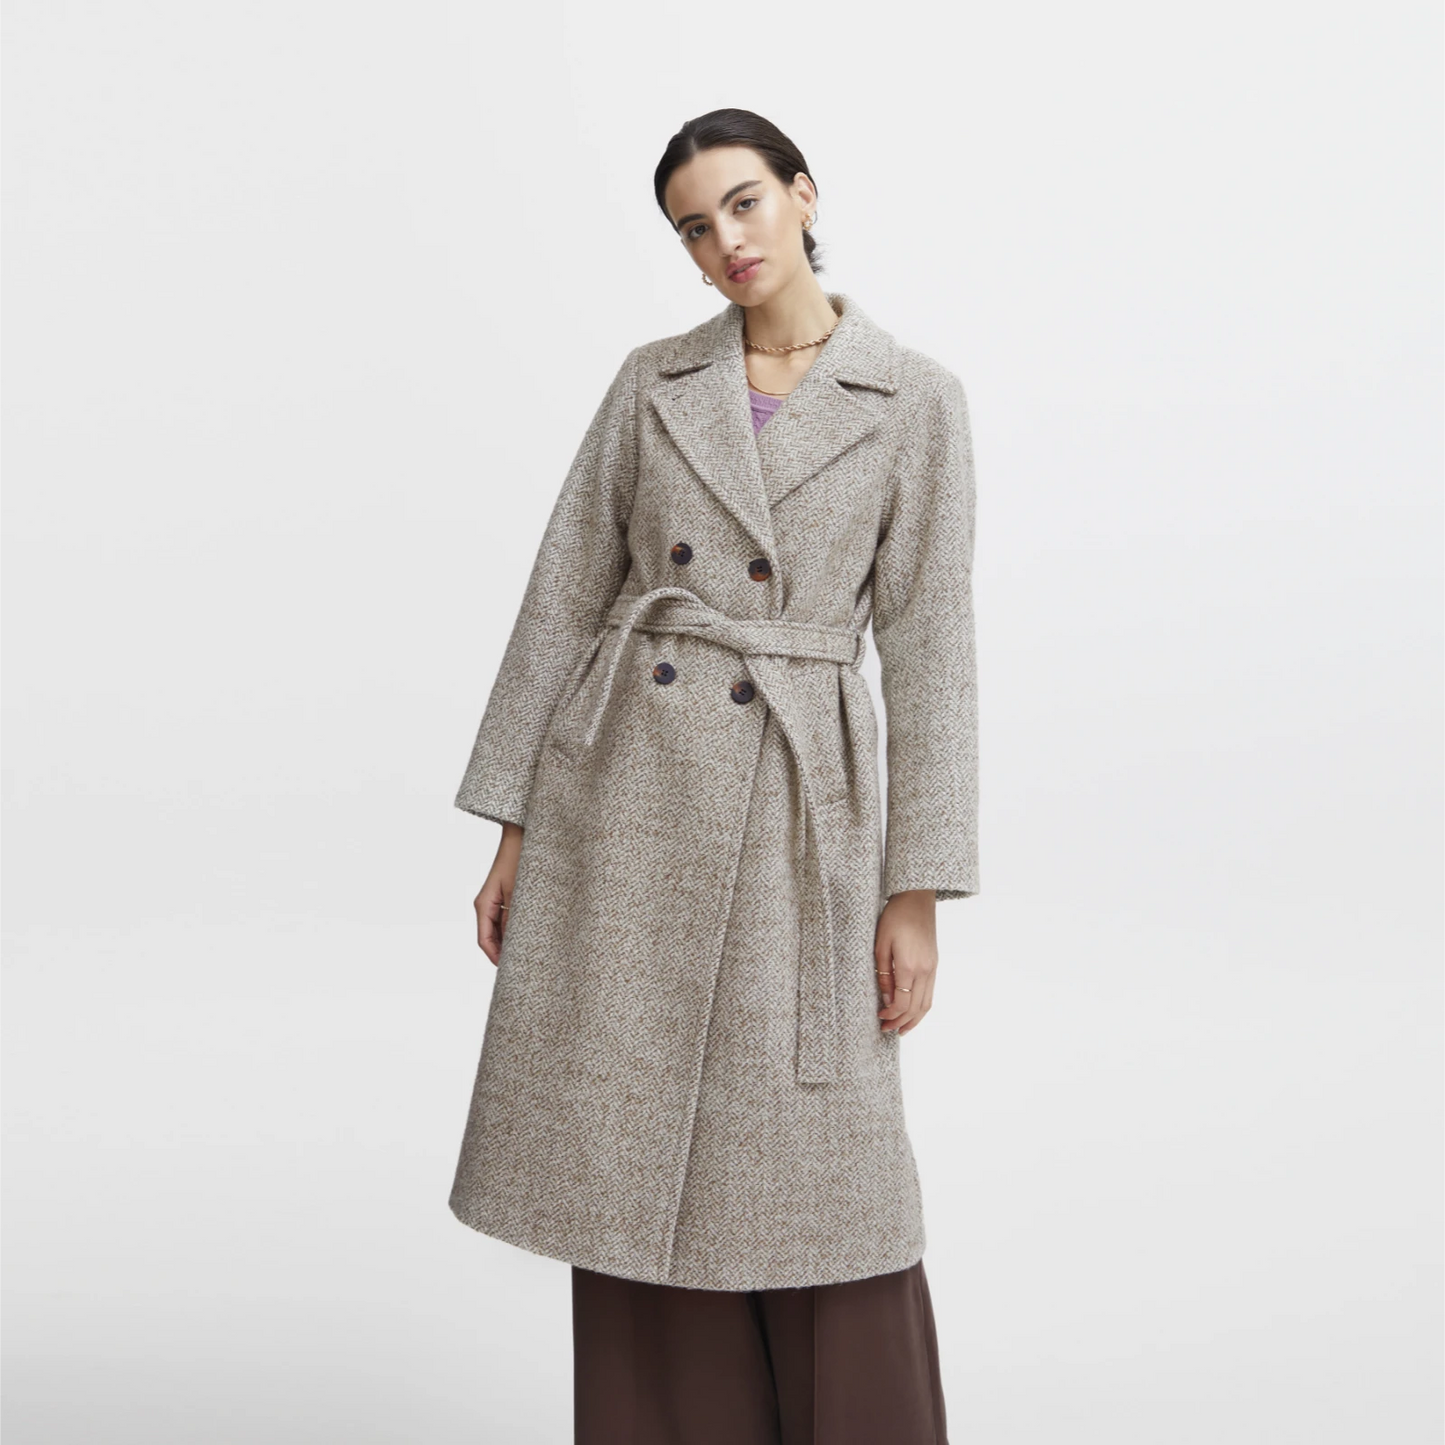 Irfreja frakke fra Atelier Rêve på model